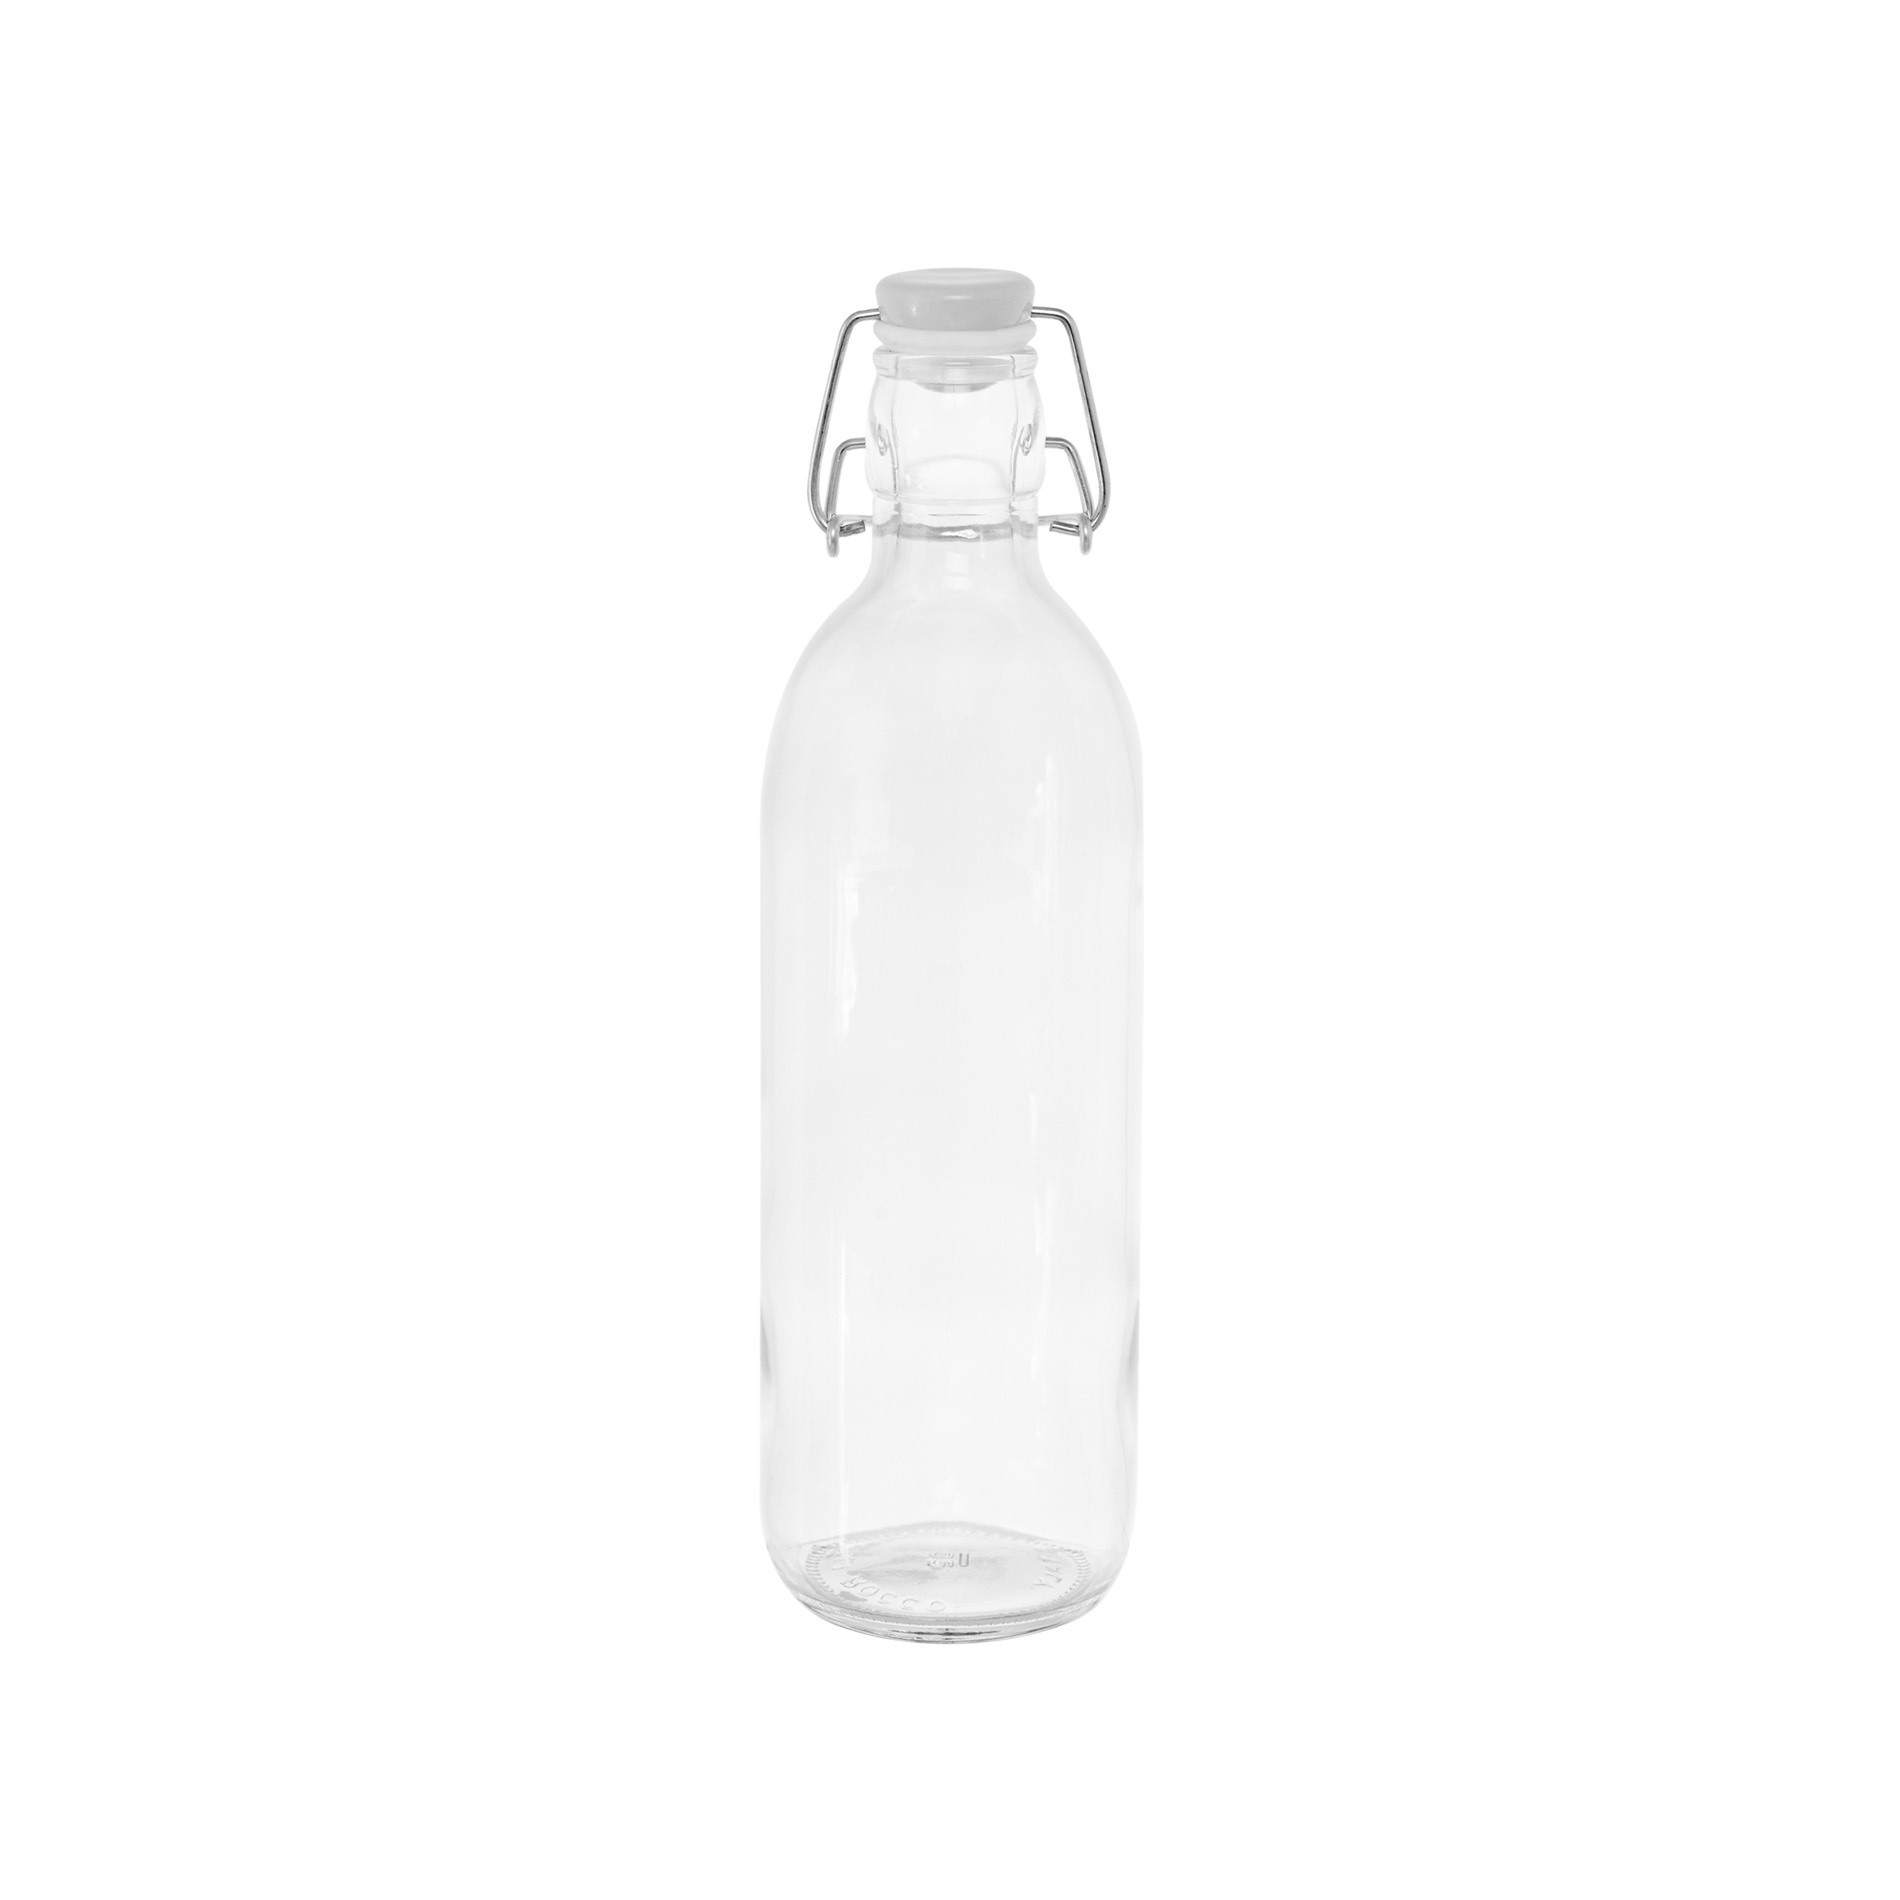 Clear glass bottle 1 L, Transparent, large image number 0